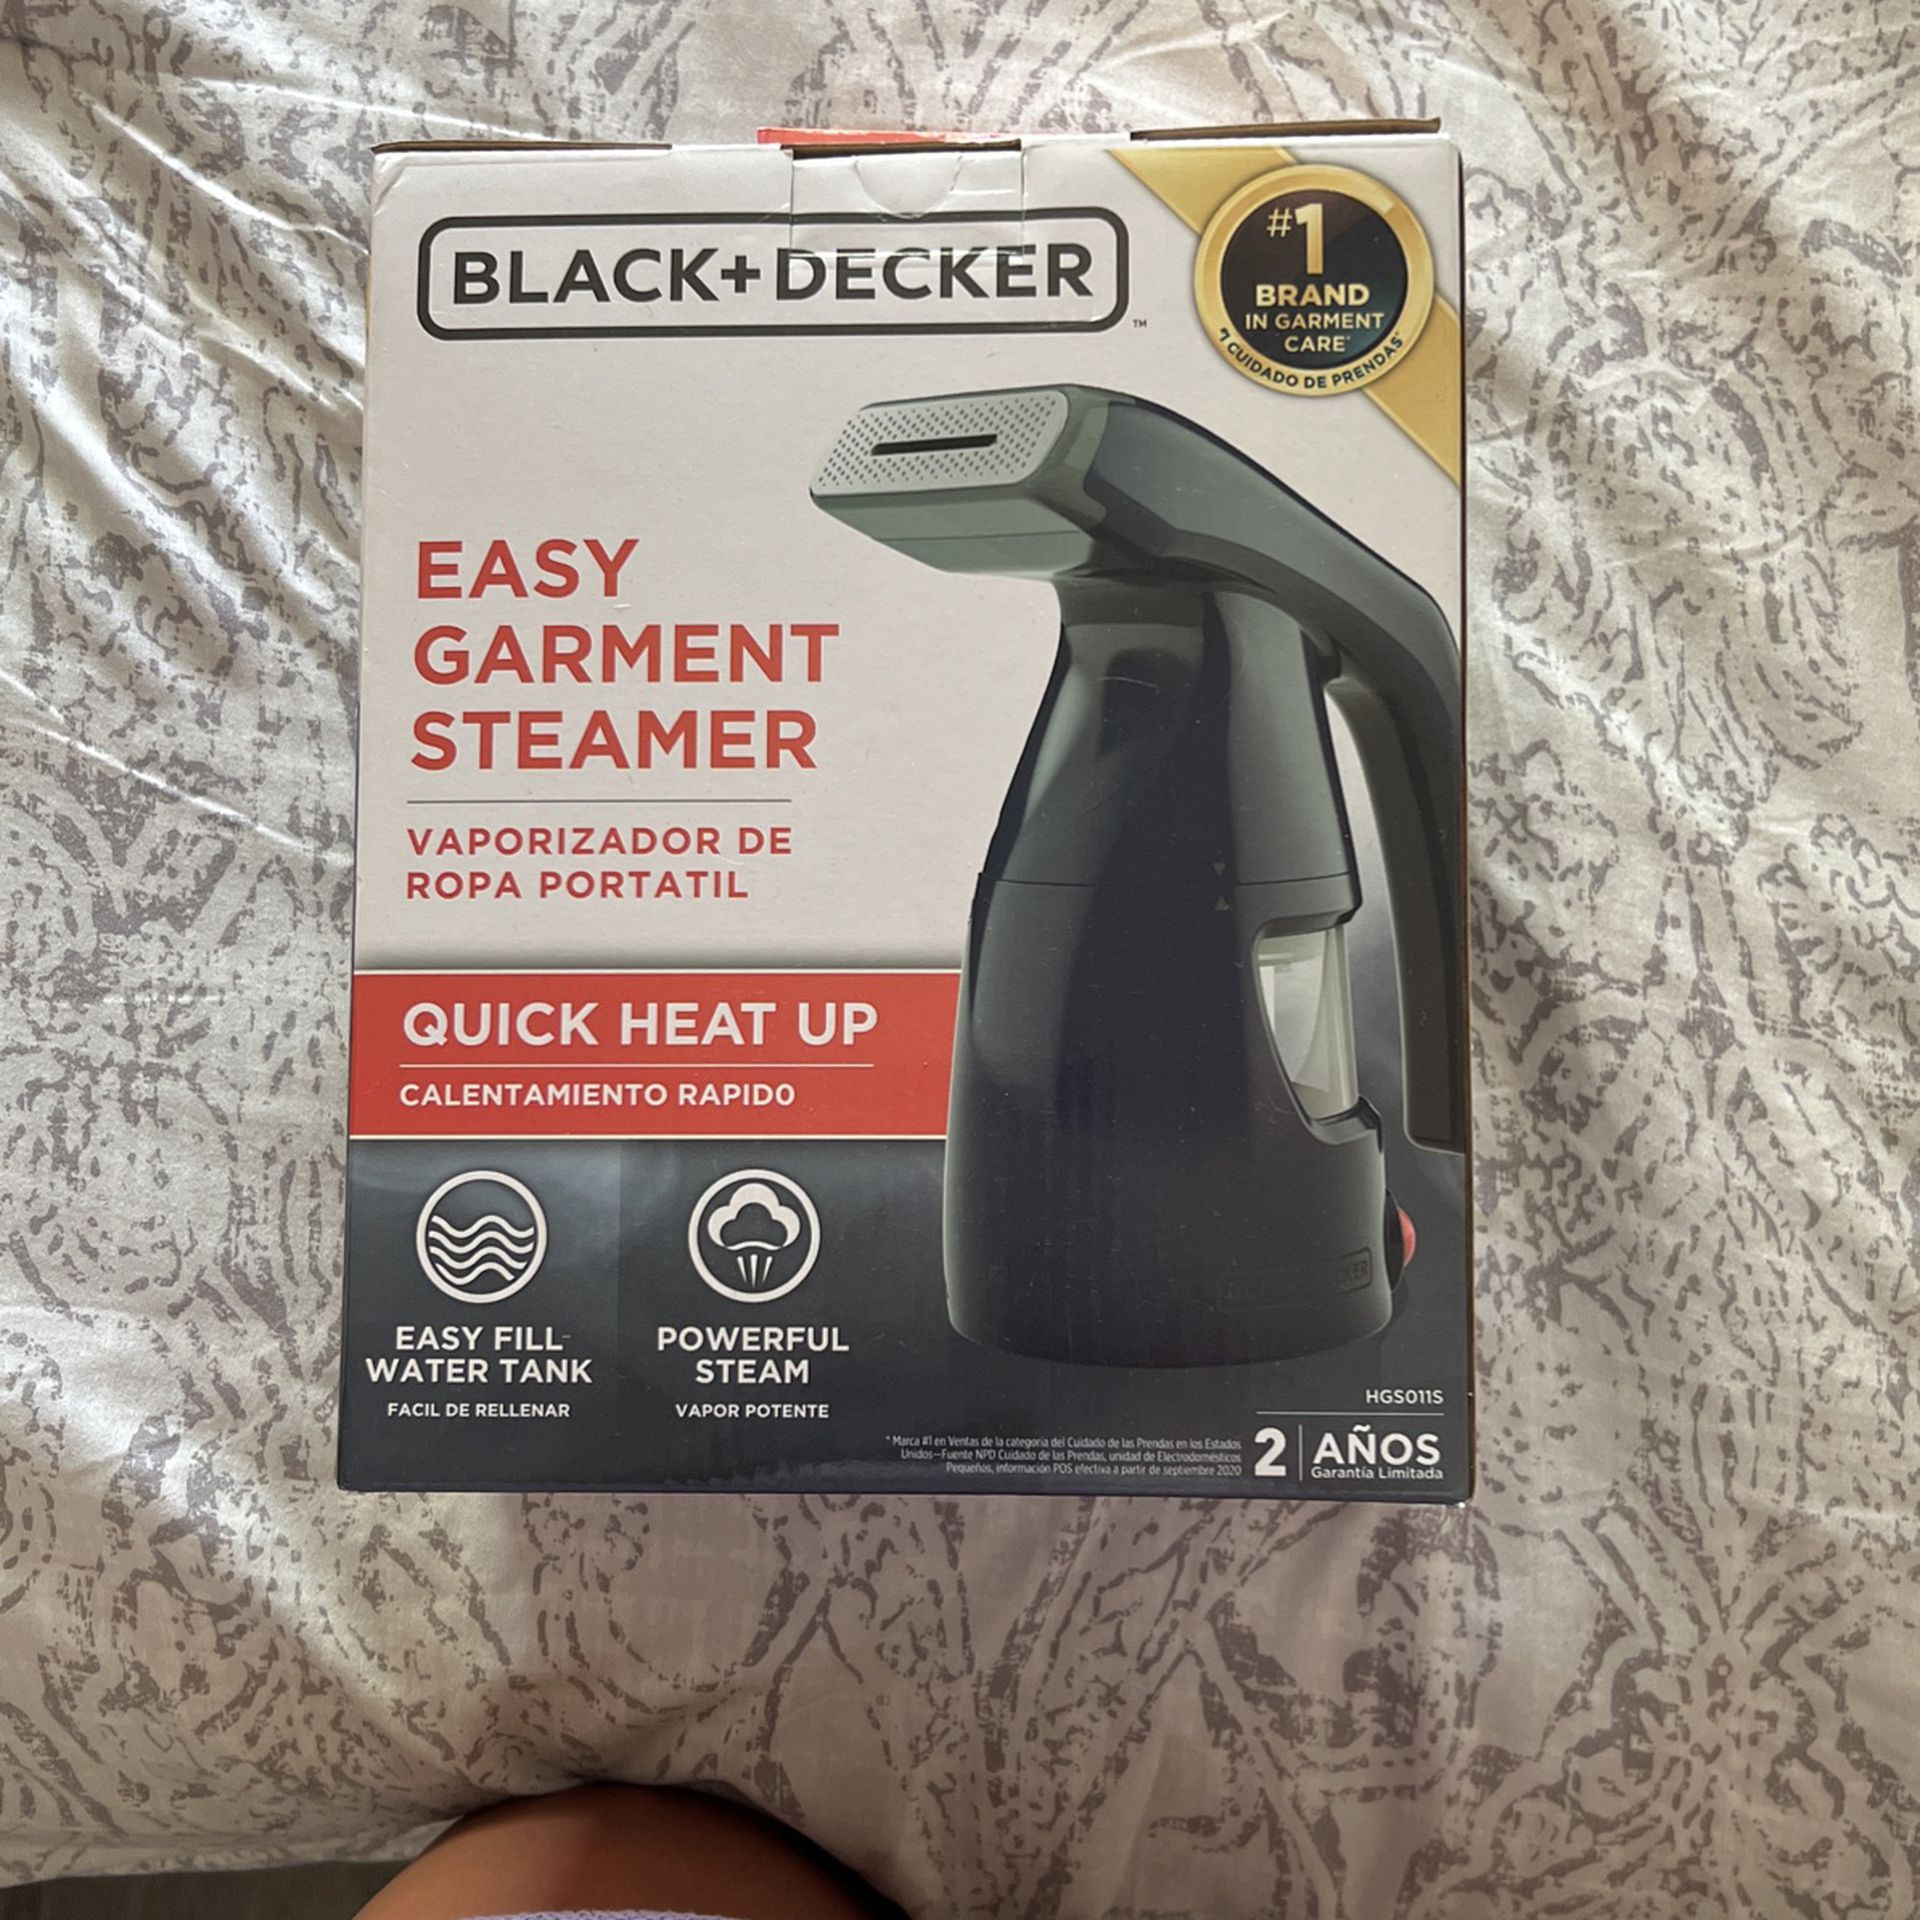 BLACK+DECKER Easy Garment Steamer